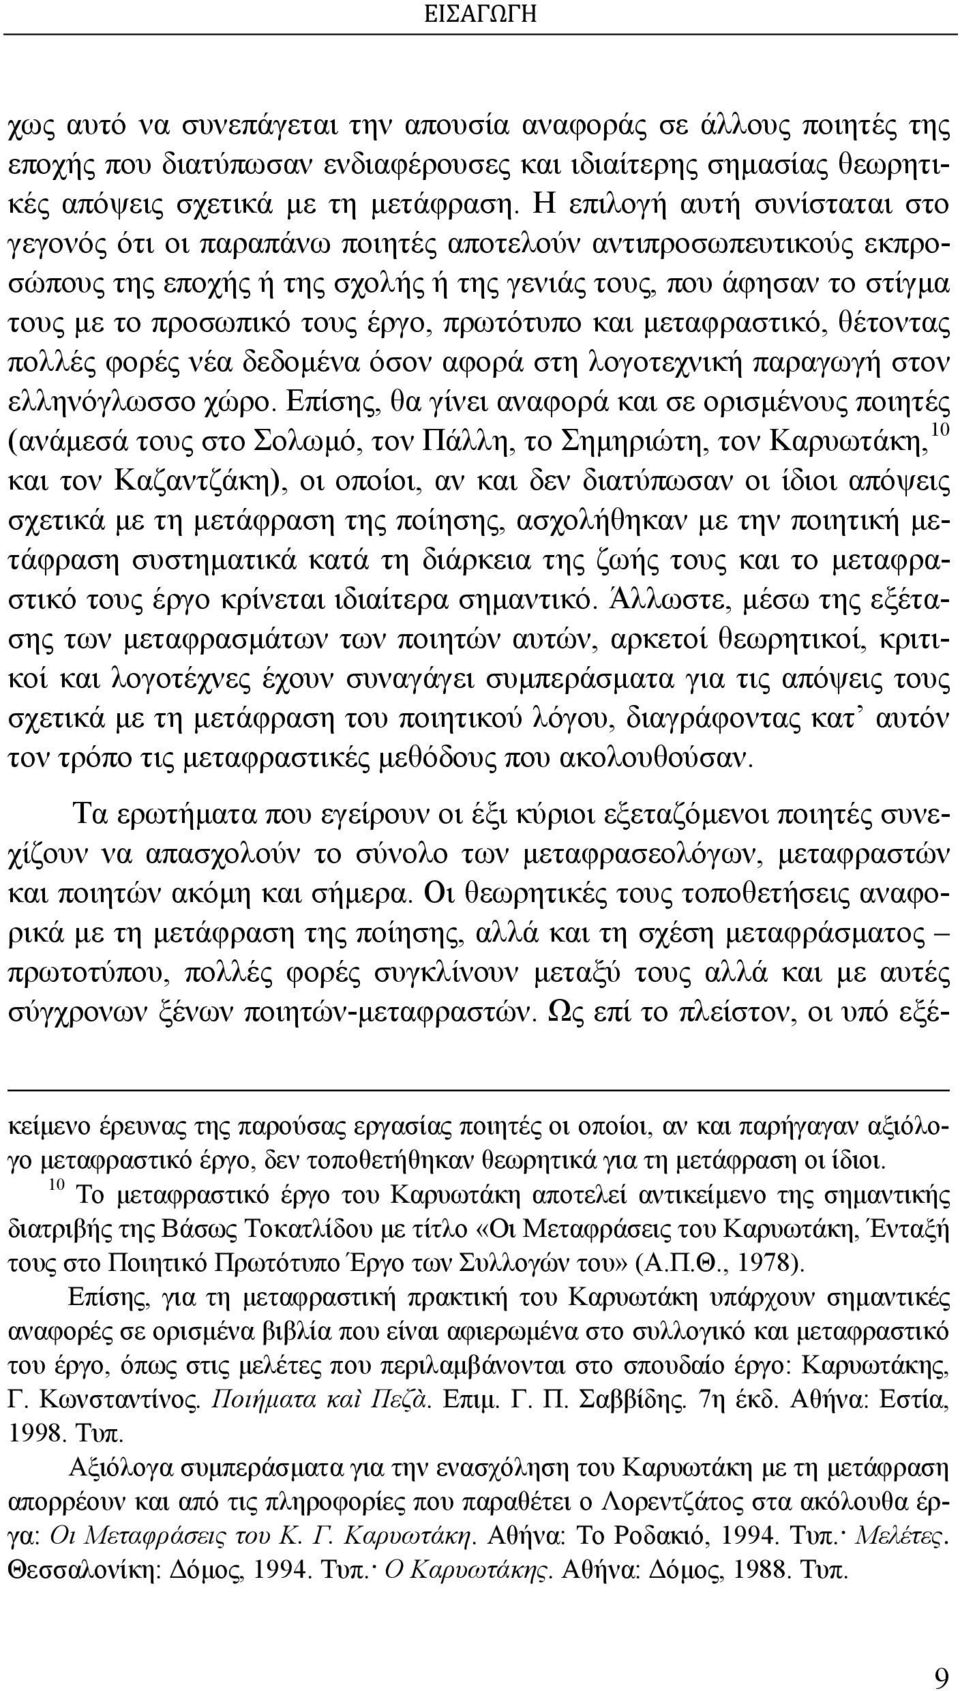 πρωτότυπο και μεταφραστικό, θέτοντας πολλές φορές νέα δεδομένα όσον αφορά στη λογοτεχνική παραγωγή στον ελληνόγλωσσο χώρο.